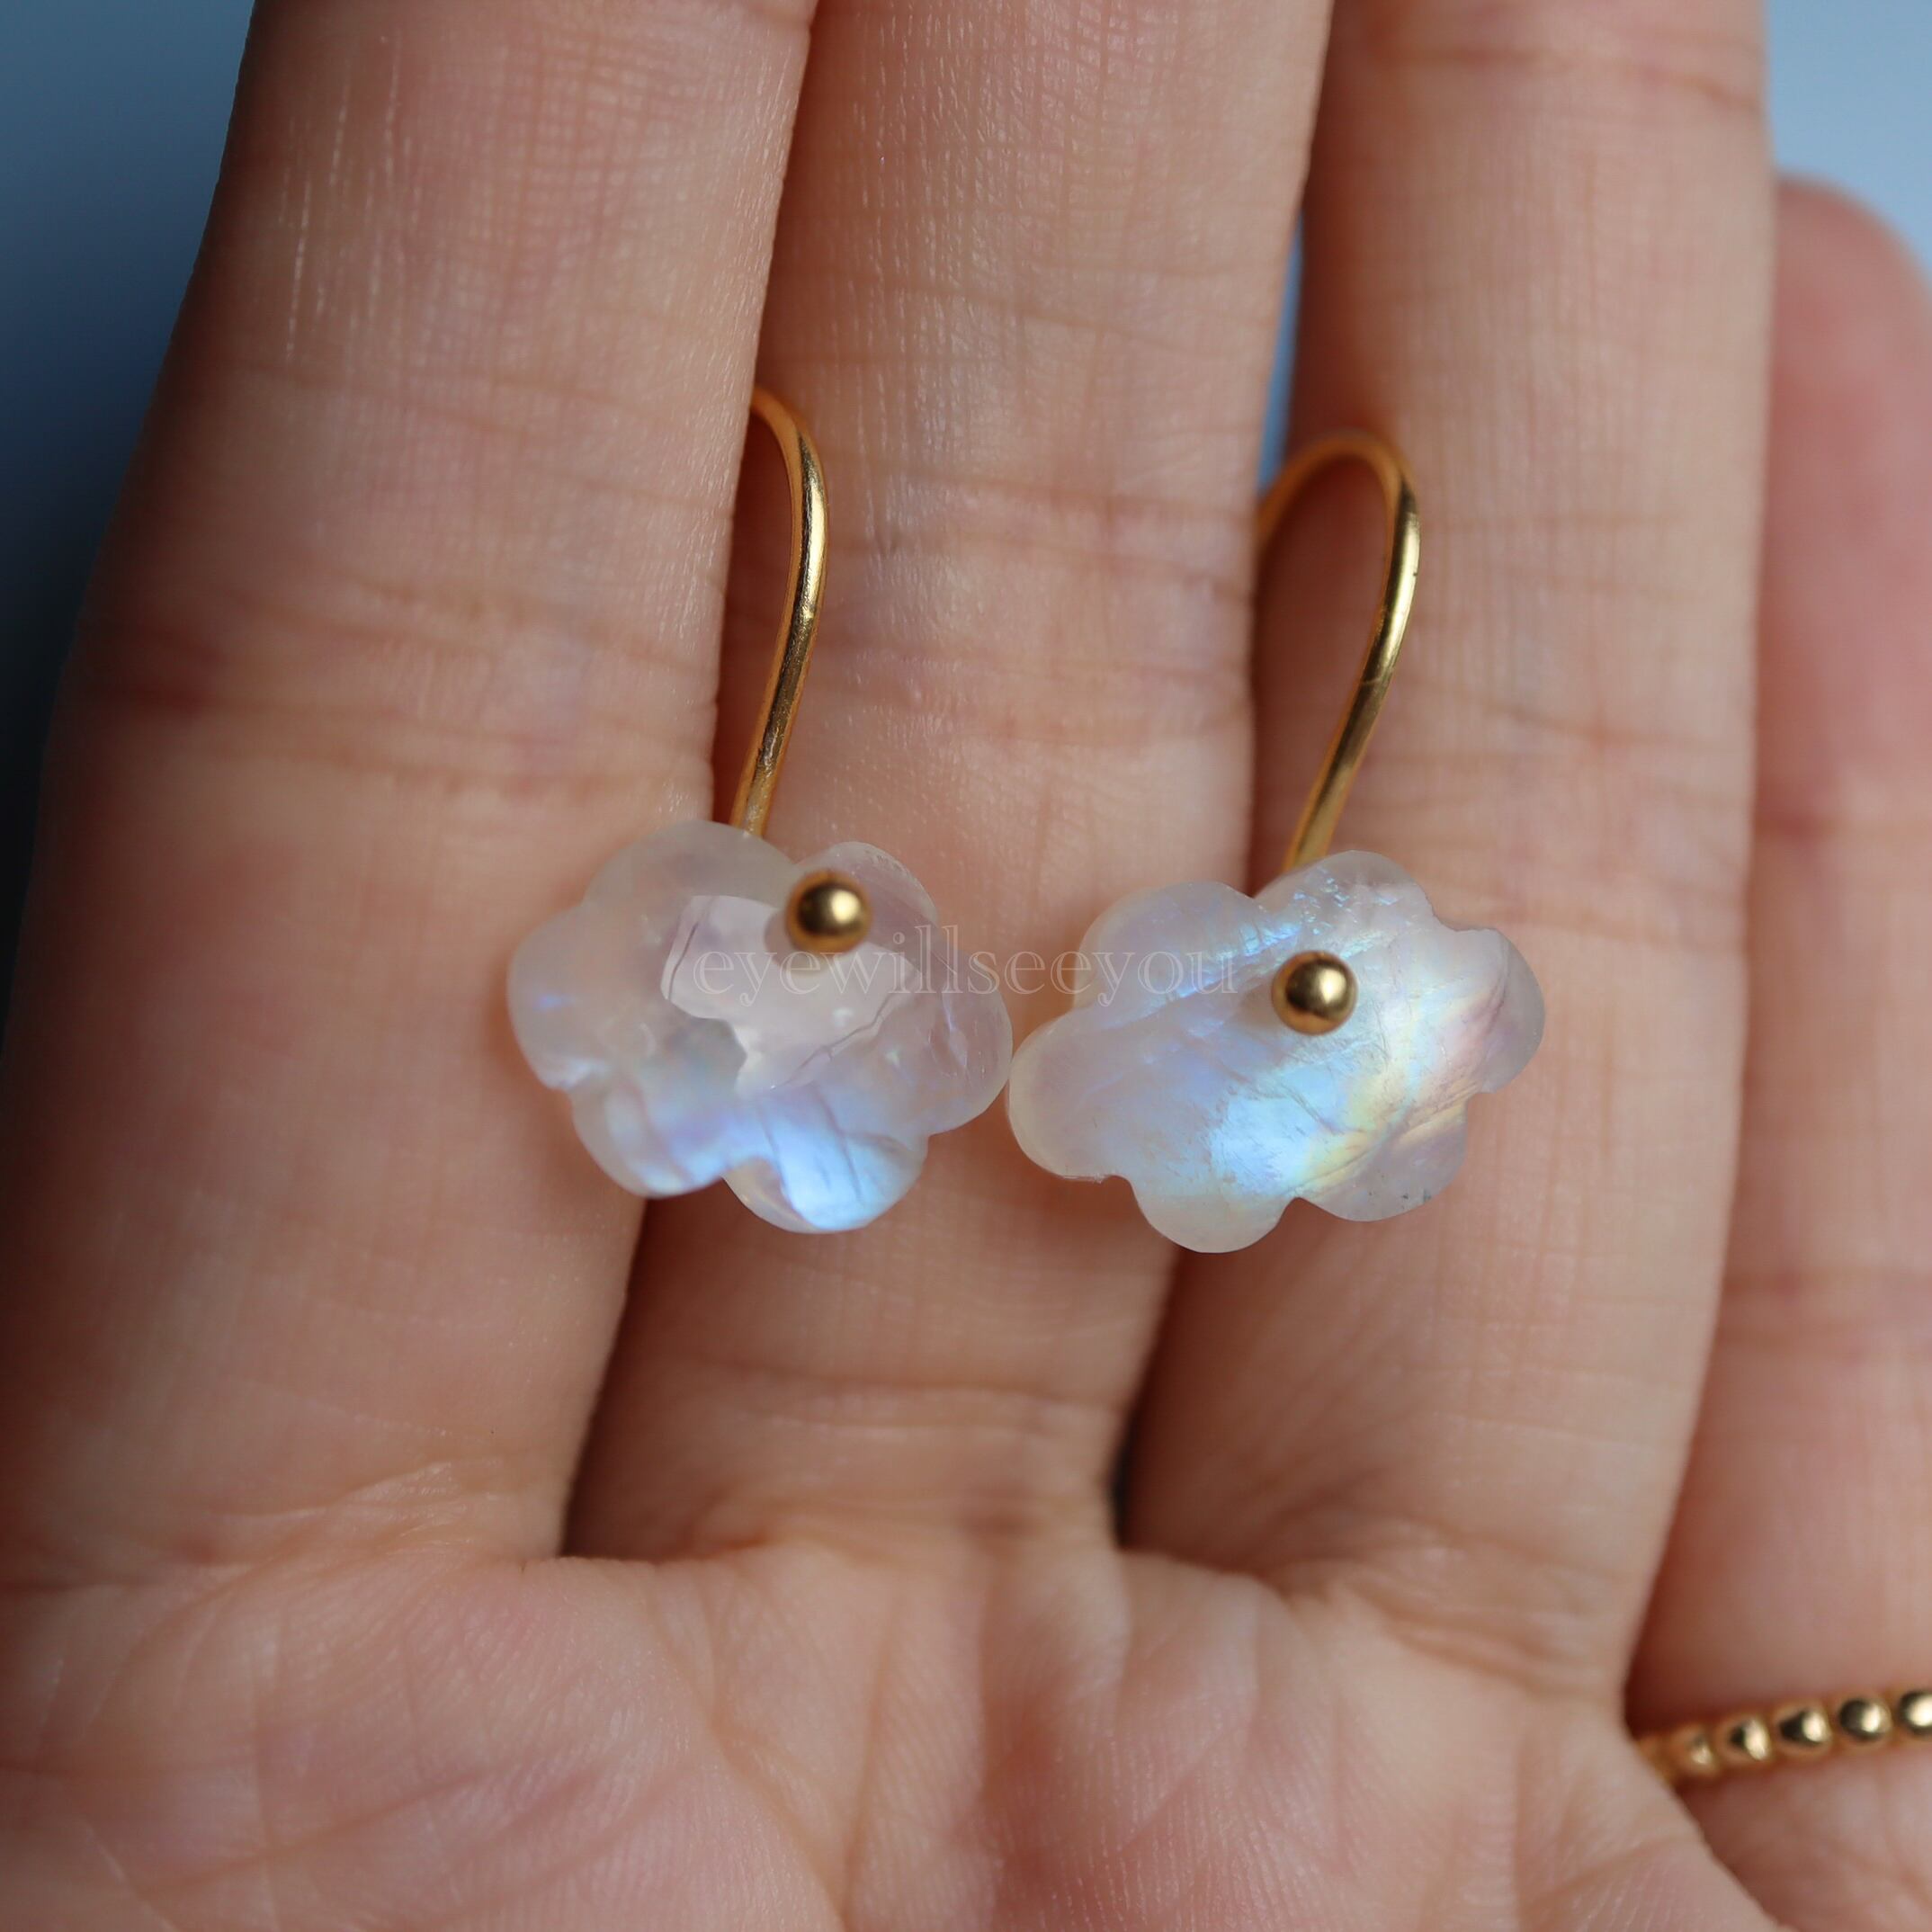 日本代理店正規品 Rainbow moonstone cloud earrings ピアス